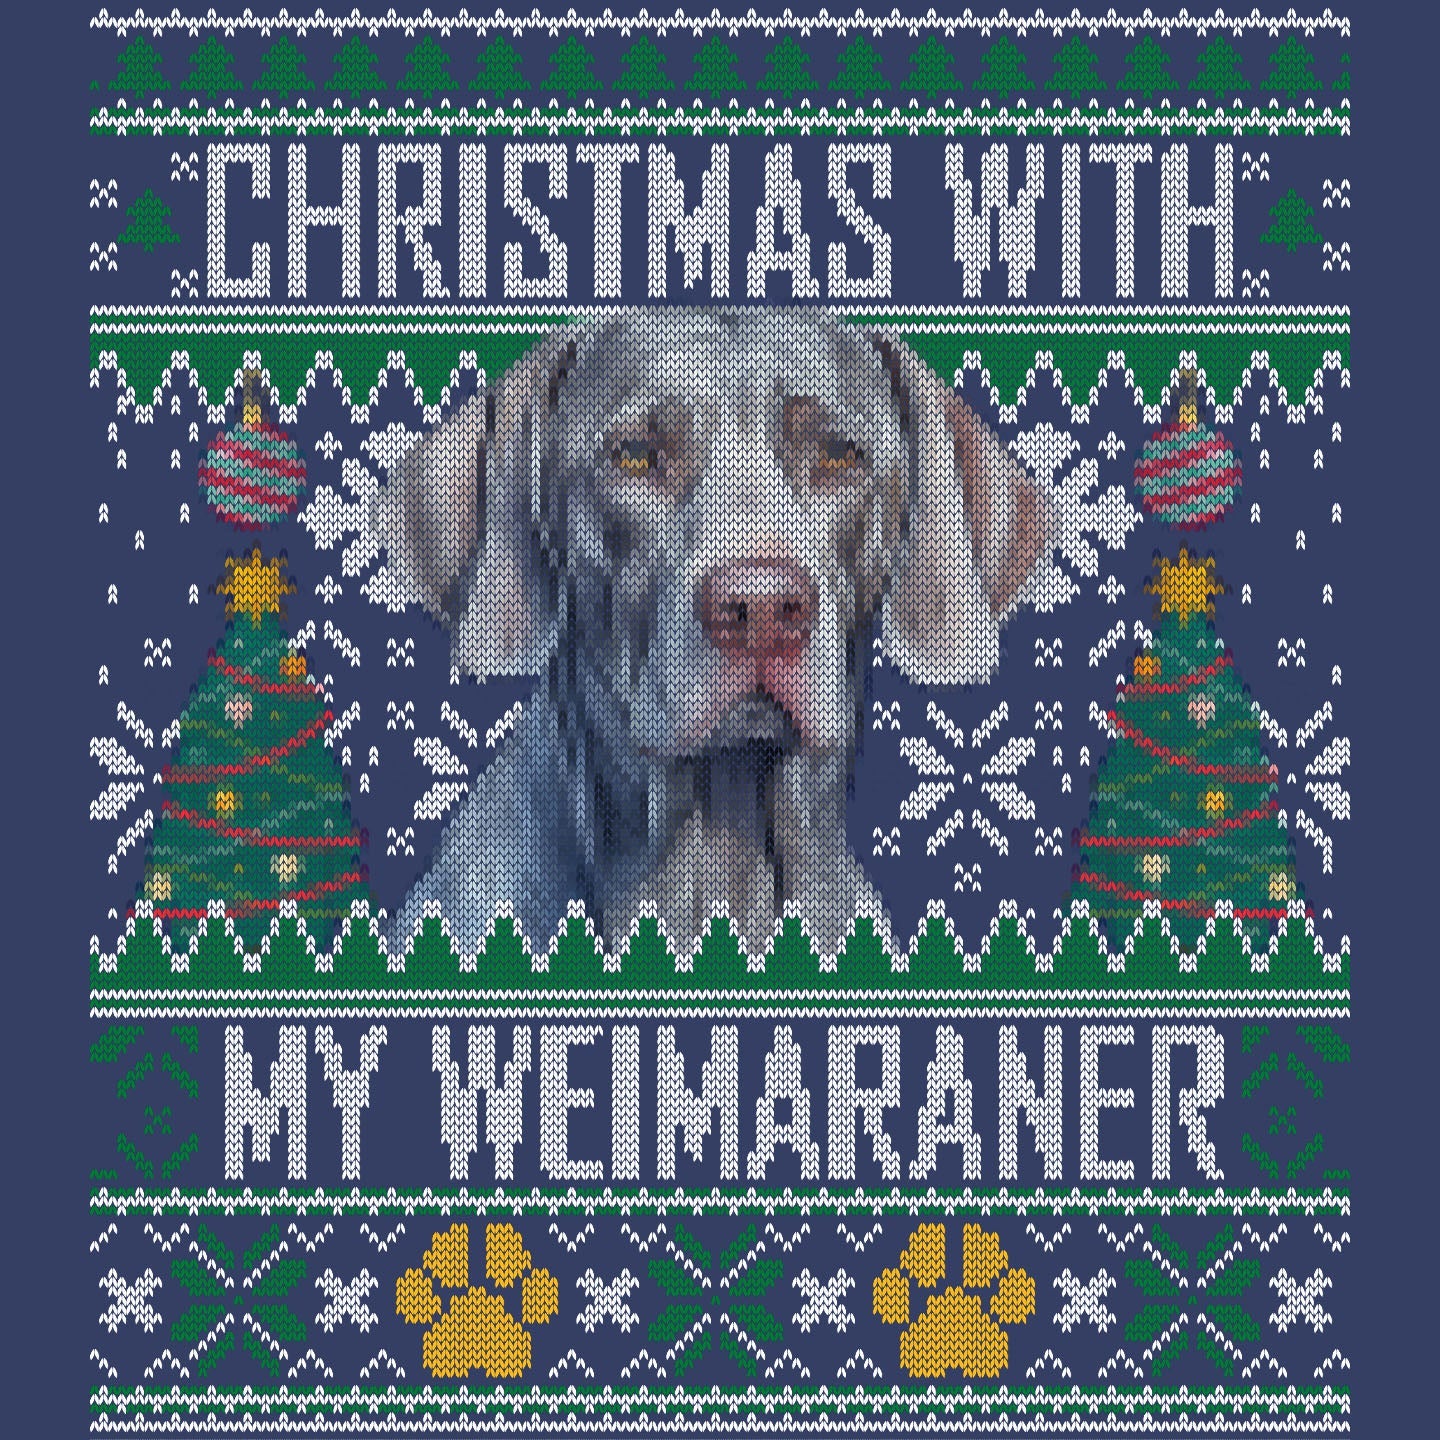 Ugly Sweater Christmas with My Weimaraner - Adult Unisex Crewneck Sweatshirt